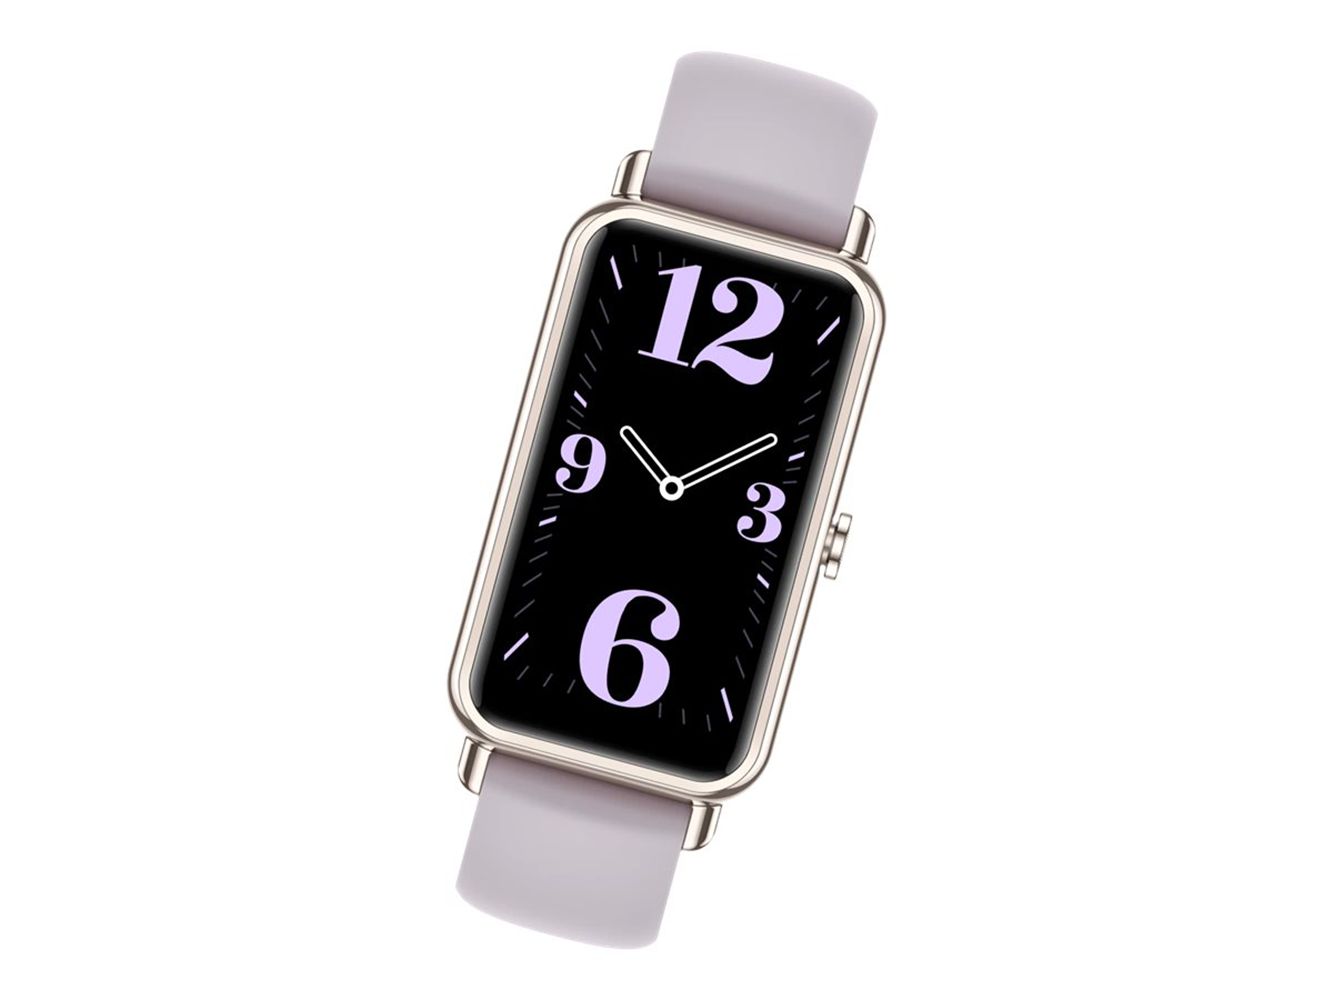 HUAWEI Watch Fit Mini Fara-B69 Violett Smartwatch  1,47 Zoll AMOLED Display